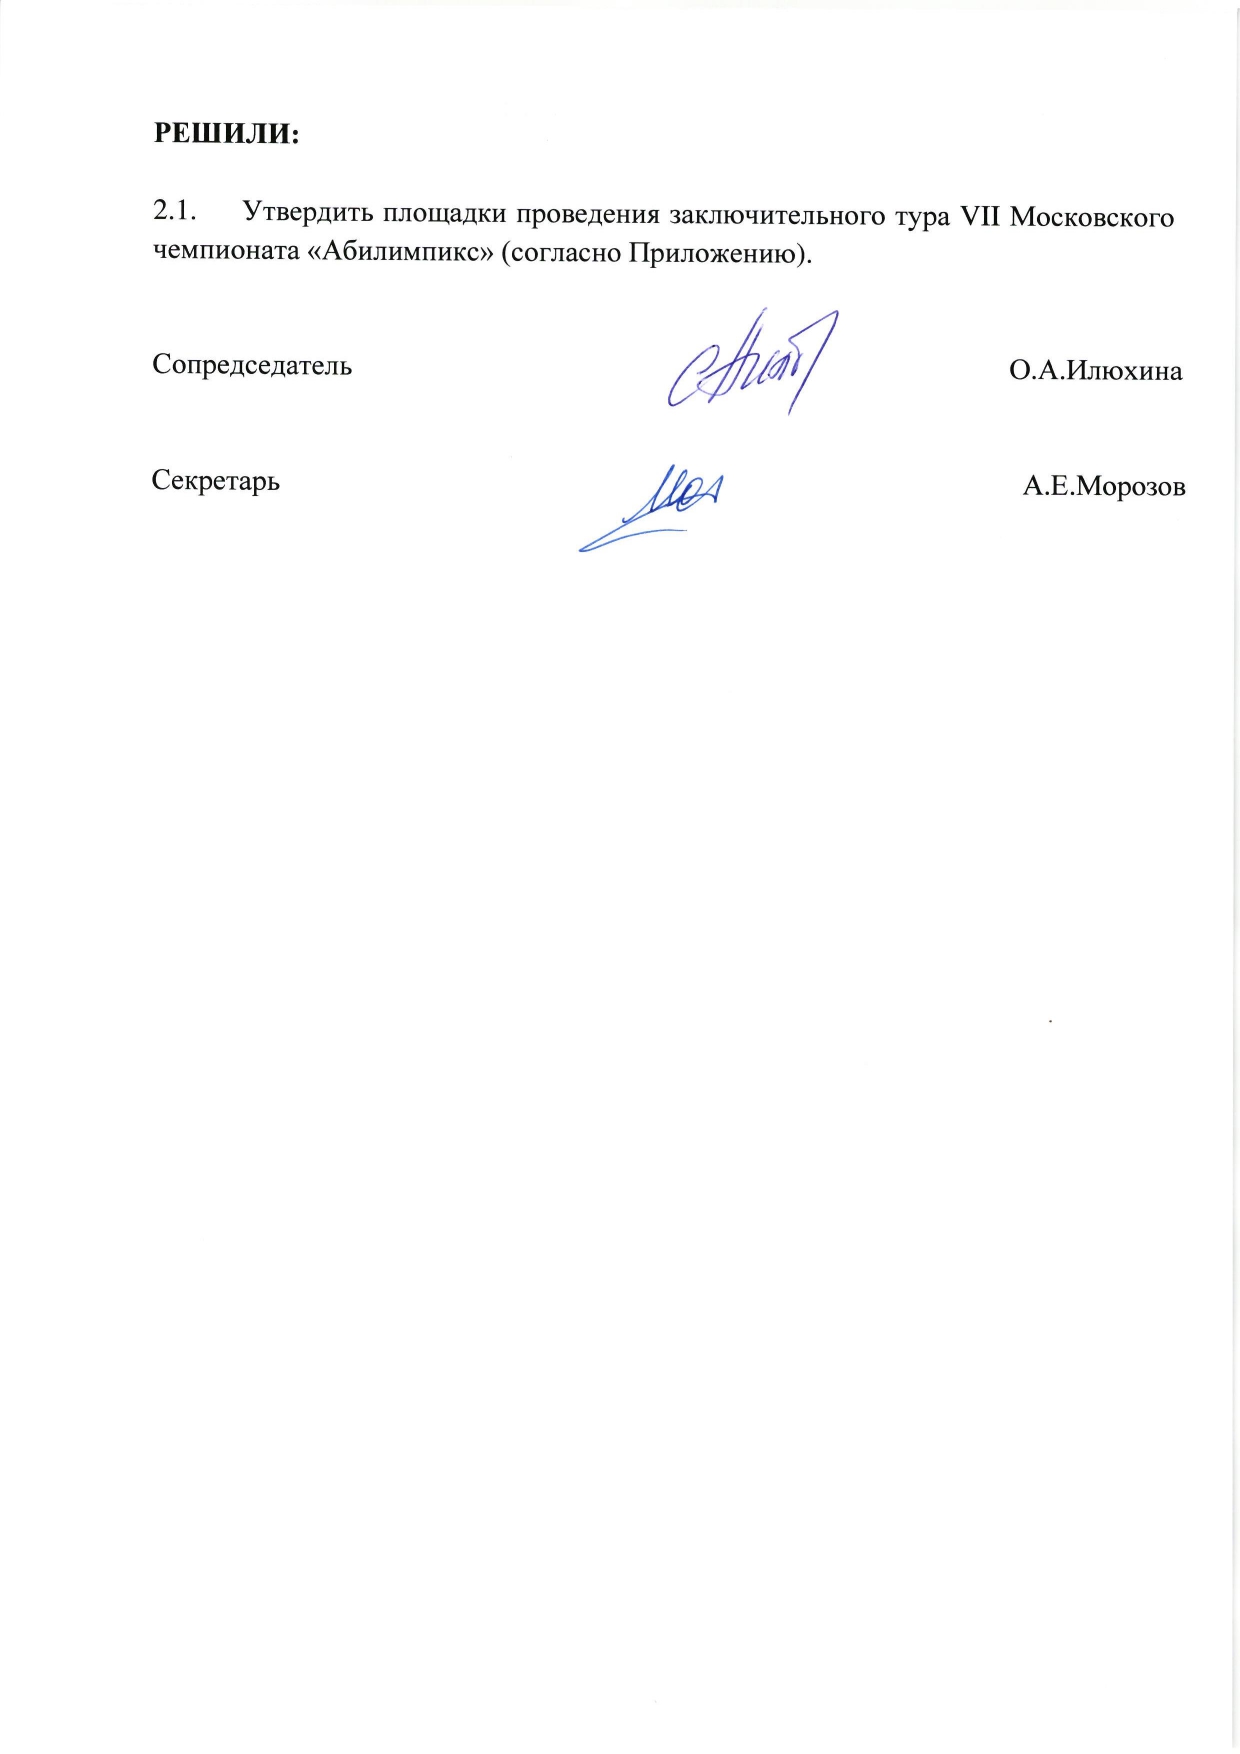 Протокол №3 заседания Оргкомитета VII Московского чемпионата Абилимпикс-2021